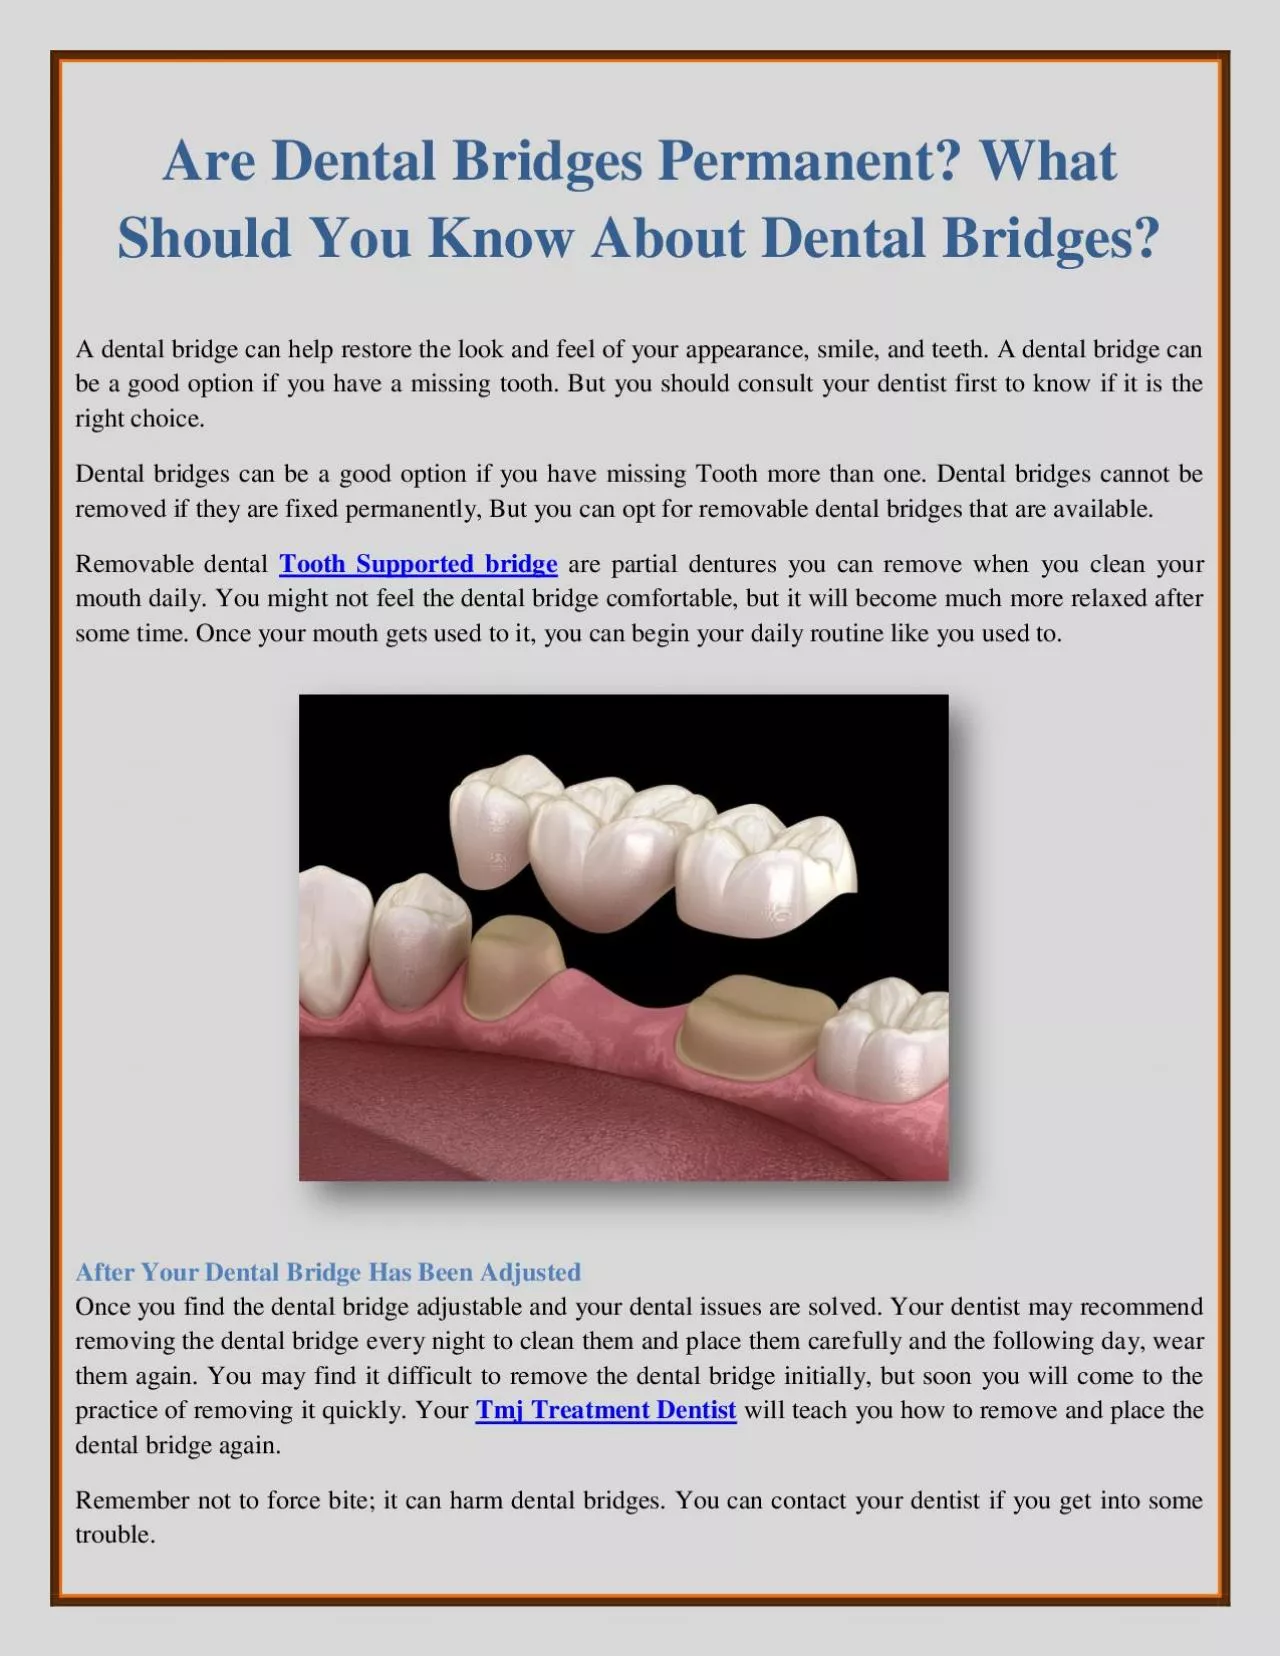 Are Dental Bridges Permanent? What Should You Know About Dental Bridges?